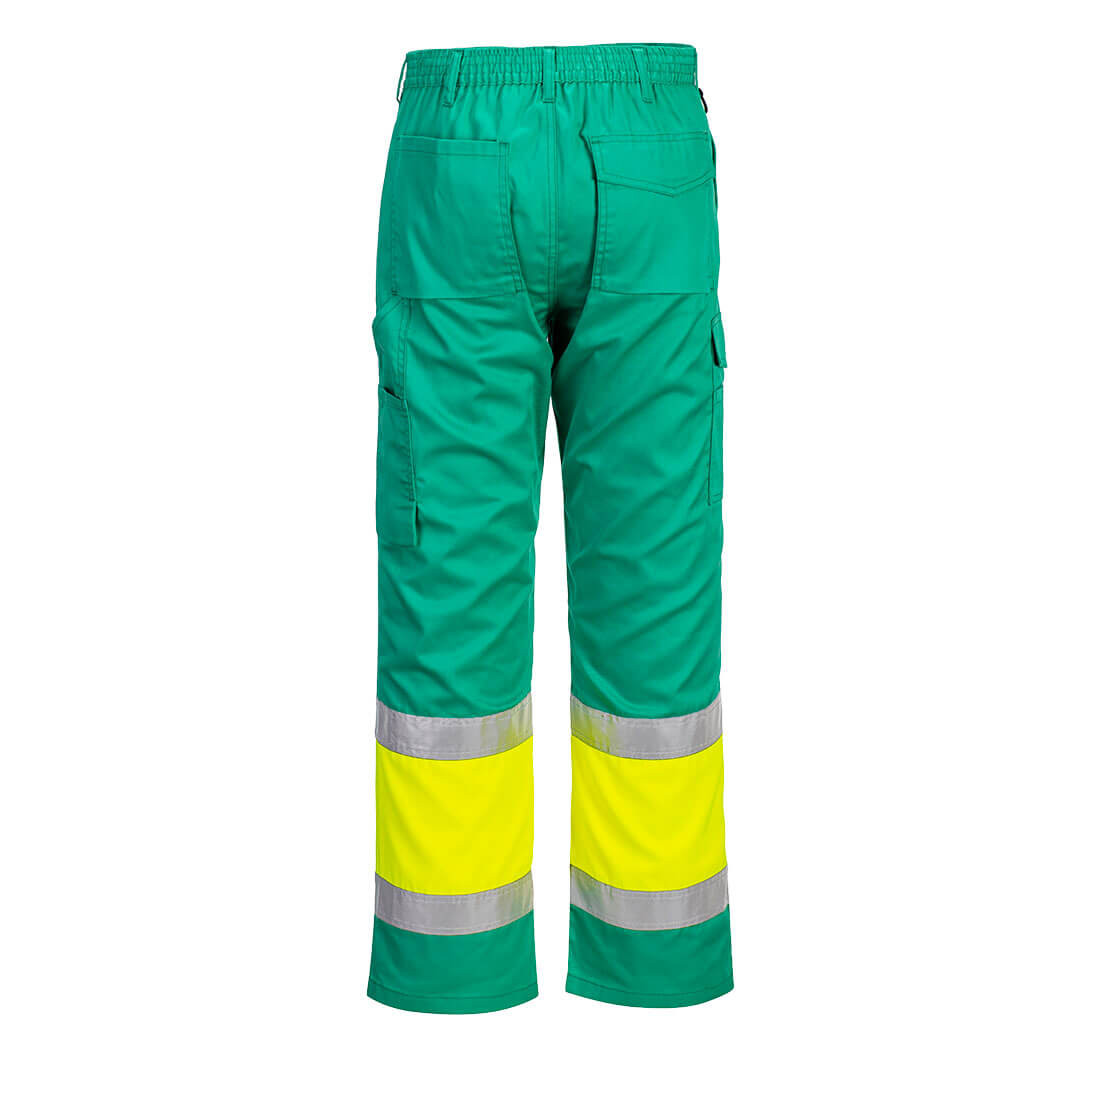 Pantalón ligero Combat bicolor de alta visibilidad - Ropa de protección